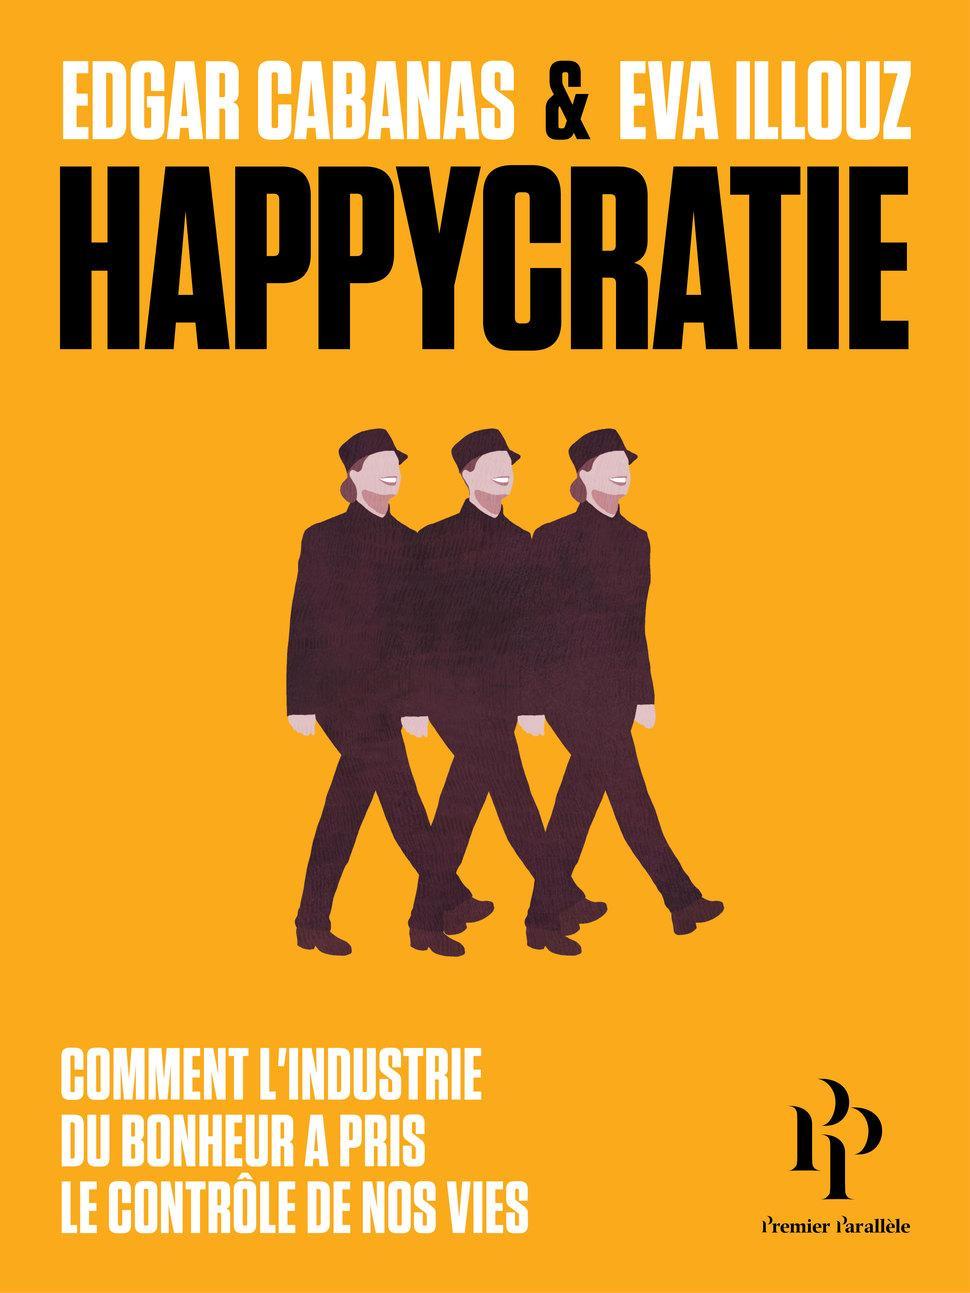 Happycratie (French language, 2018, Premier Parallèle)